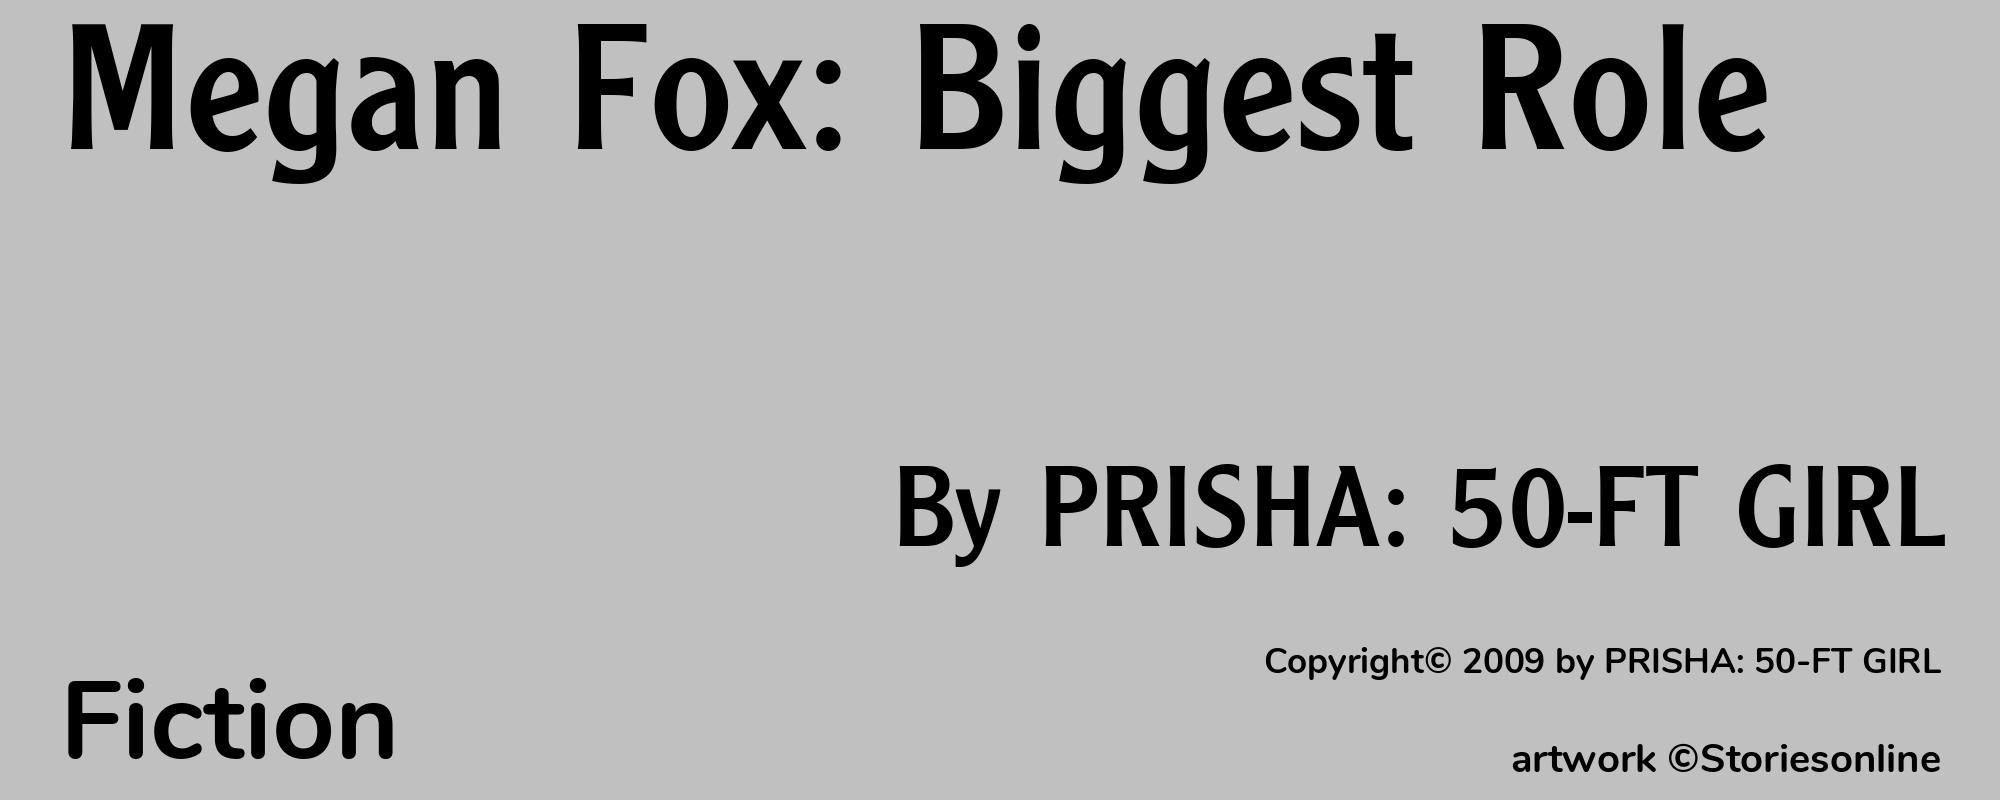 Megan Fox: Biggest Role - Cover